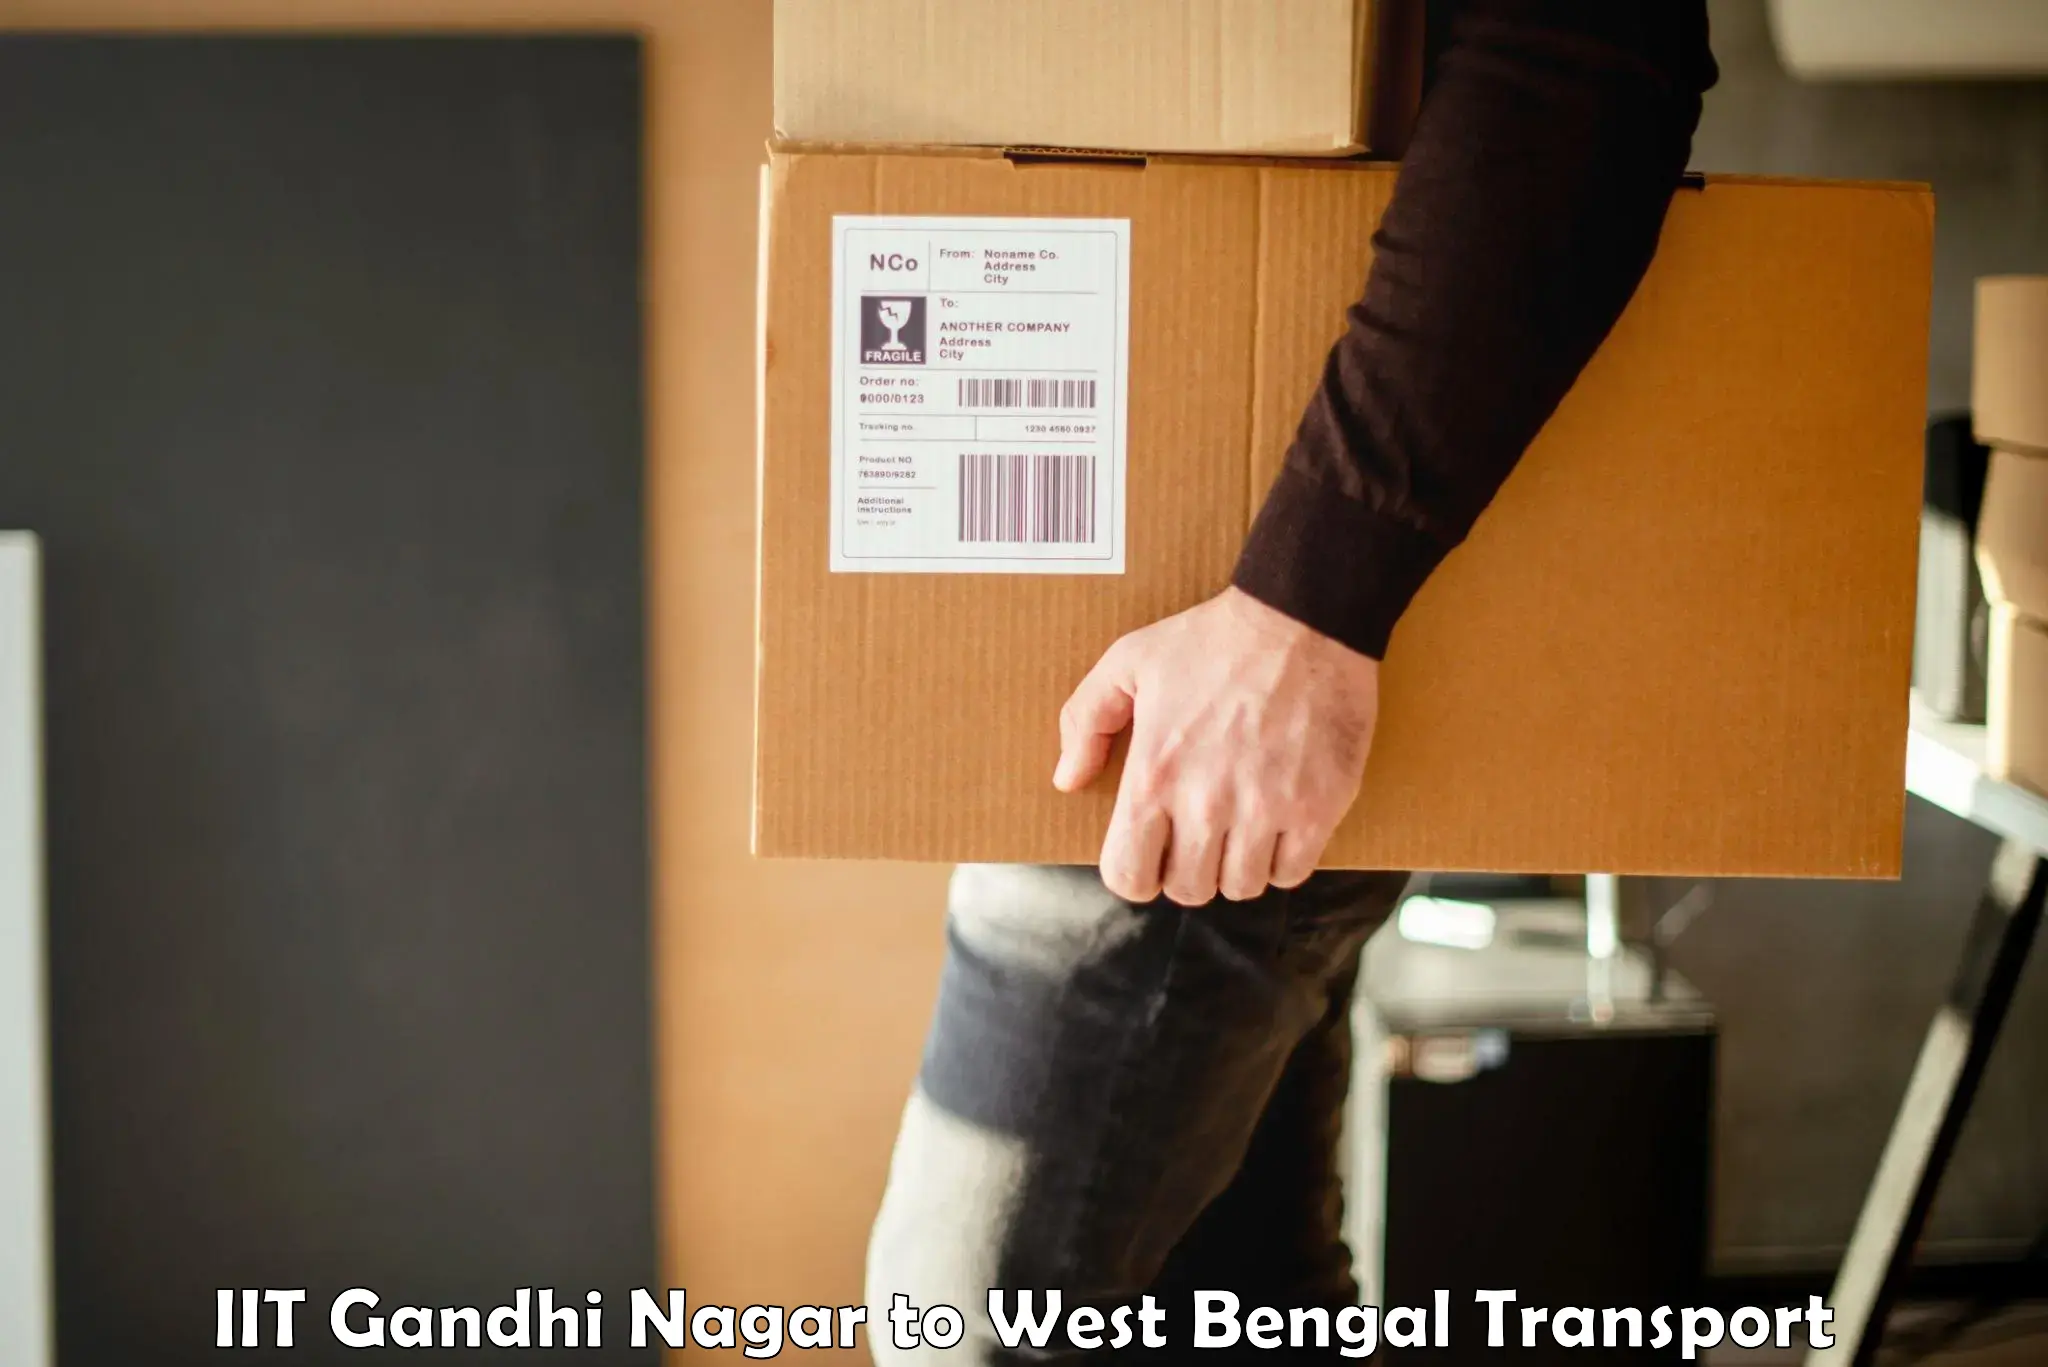 Goods delivery service IIT Gandhi Nagar to Belda